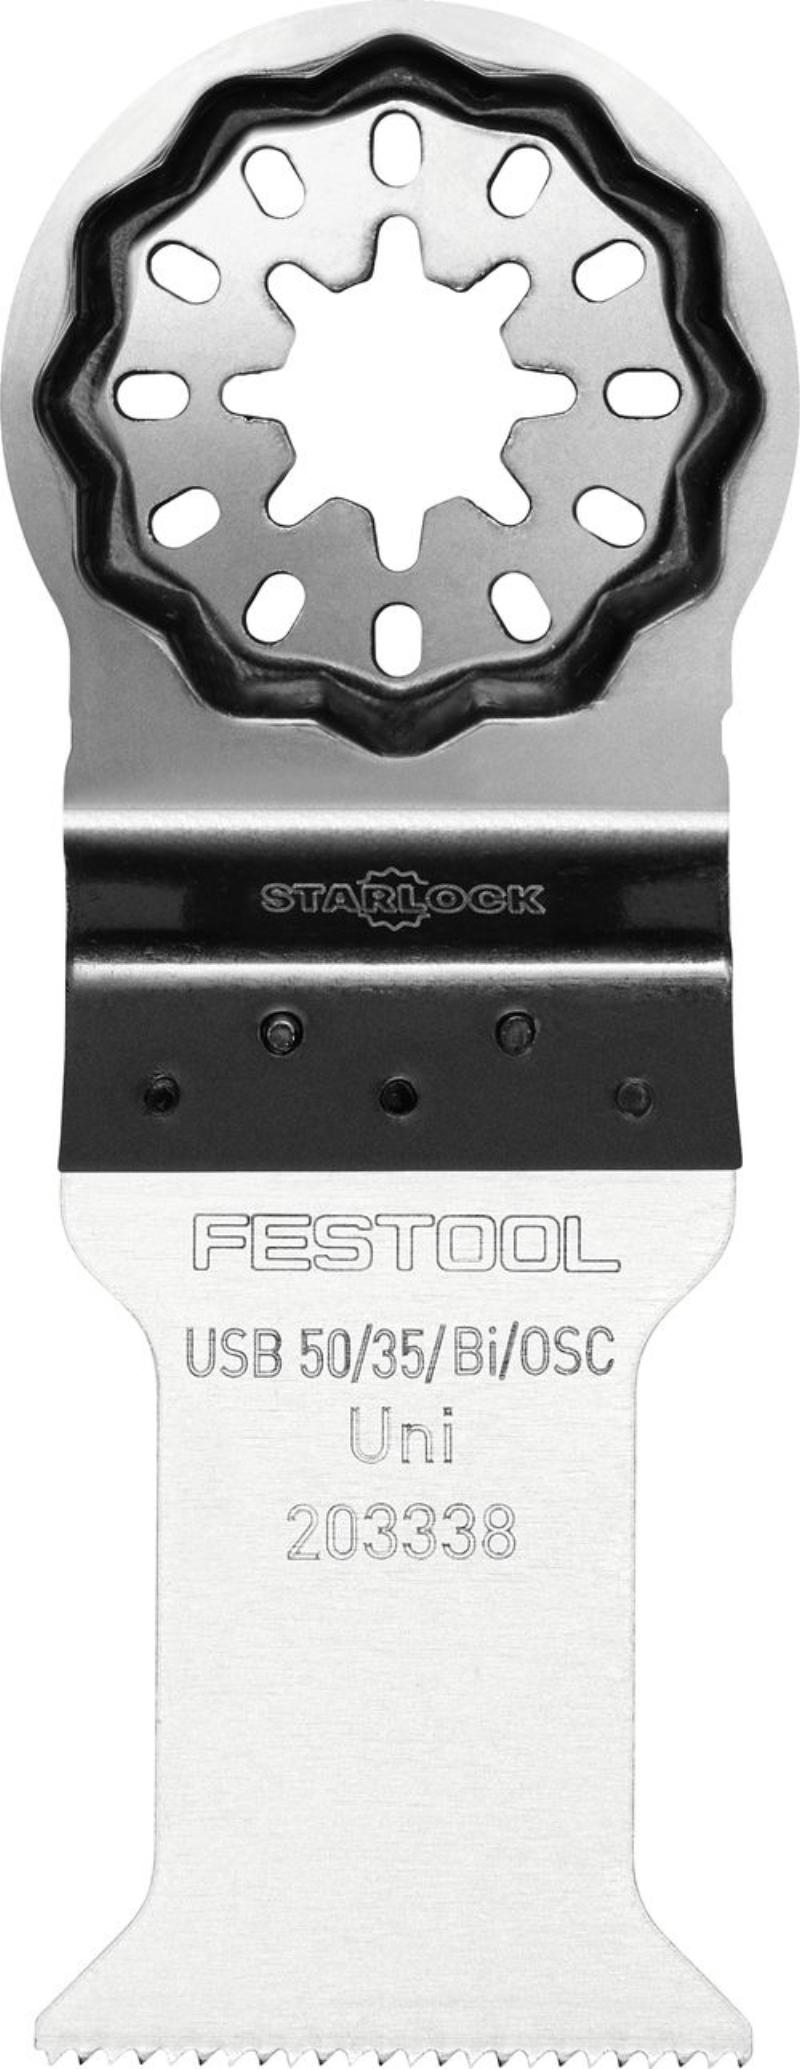 Festool Universal-Sägeblatt USB 50/35/Bi/OSC, 1 Stk